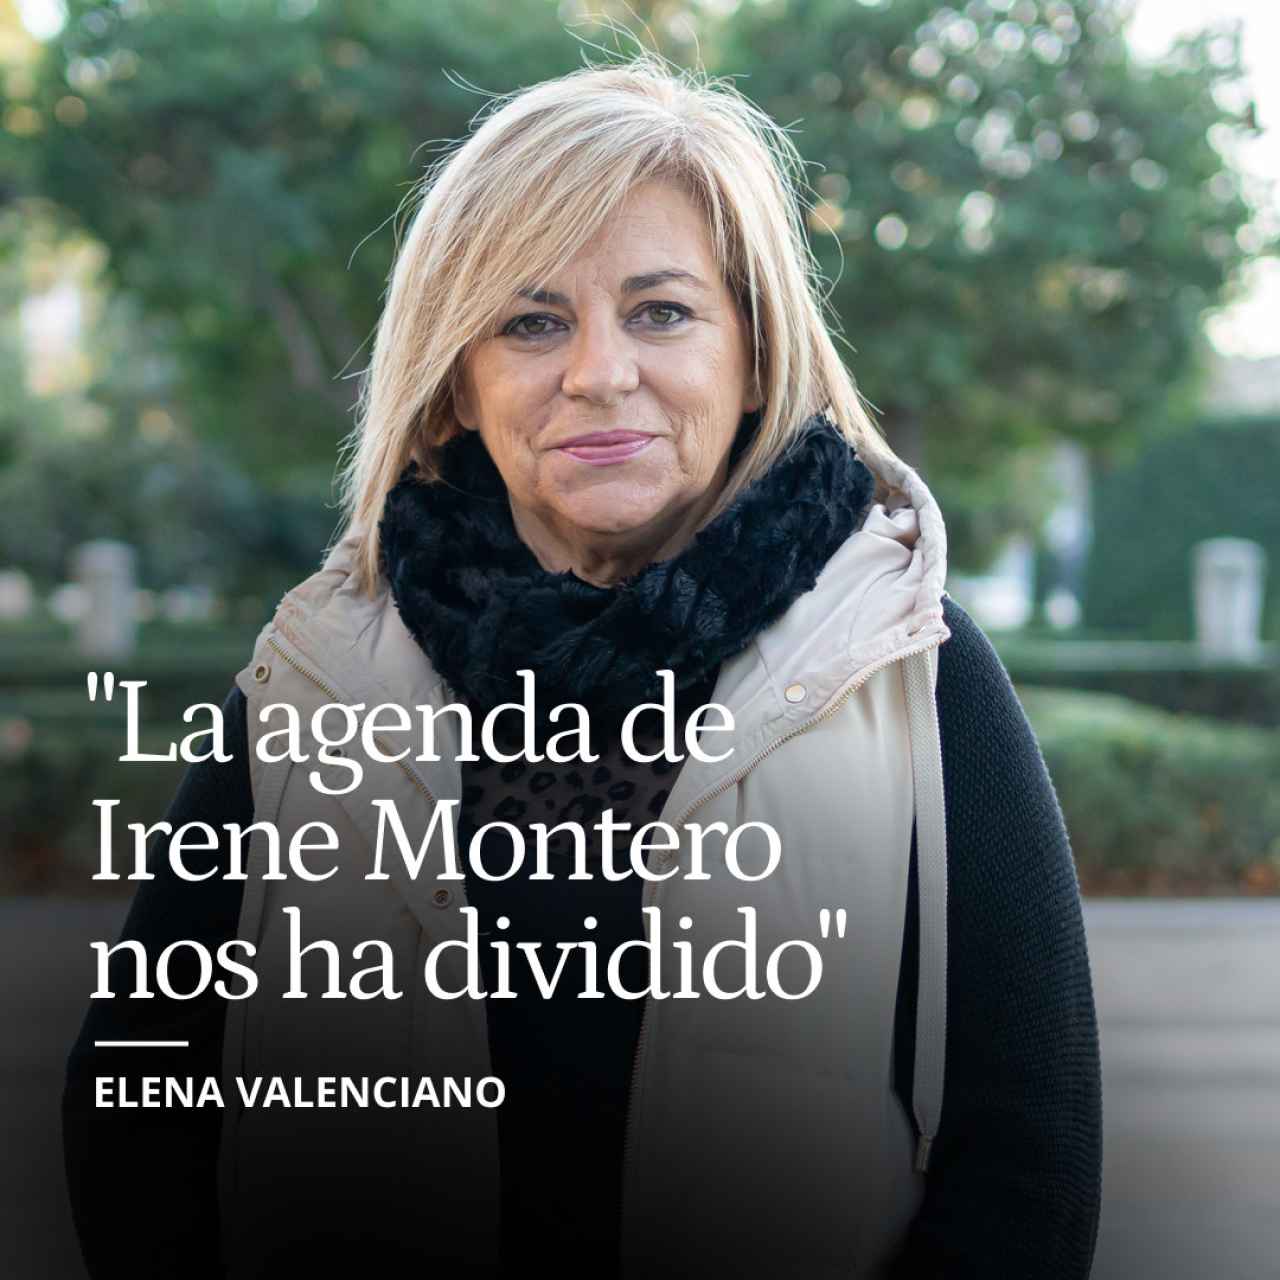 Elena Valenciano: "La agenda de Irene Montero nos ha dividido y eso es un desastre para las mujeres"